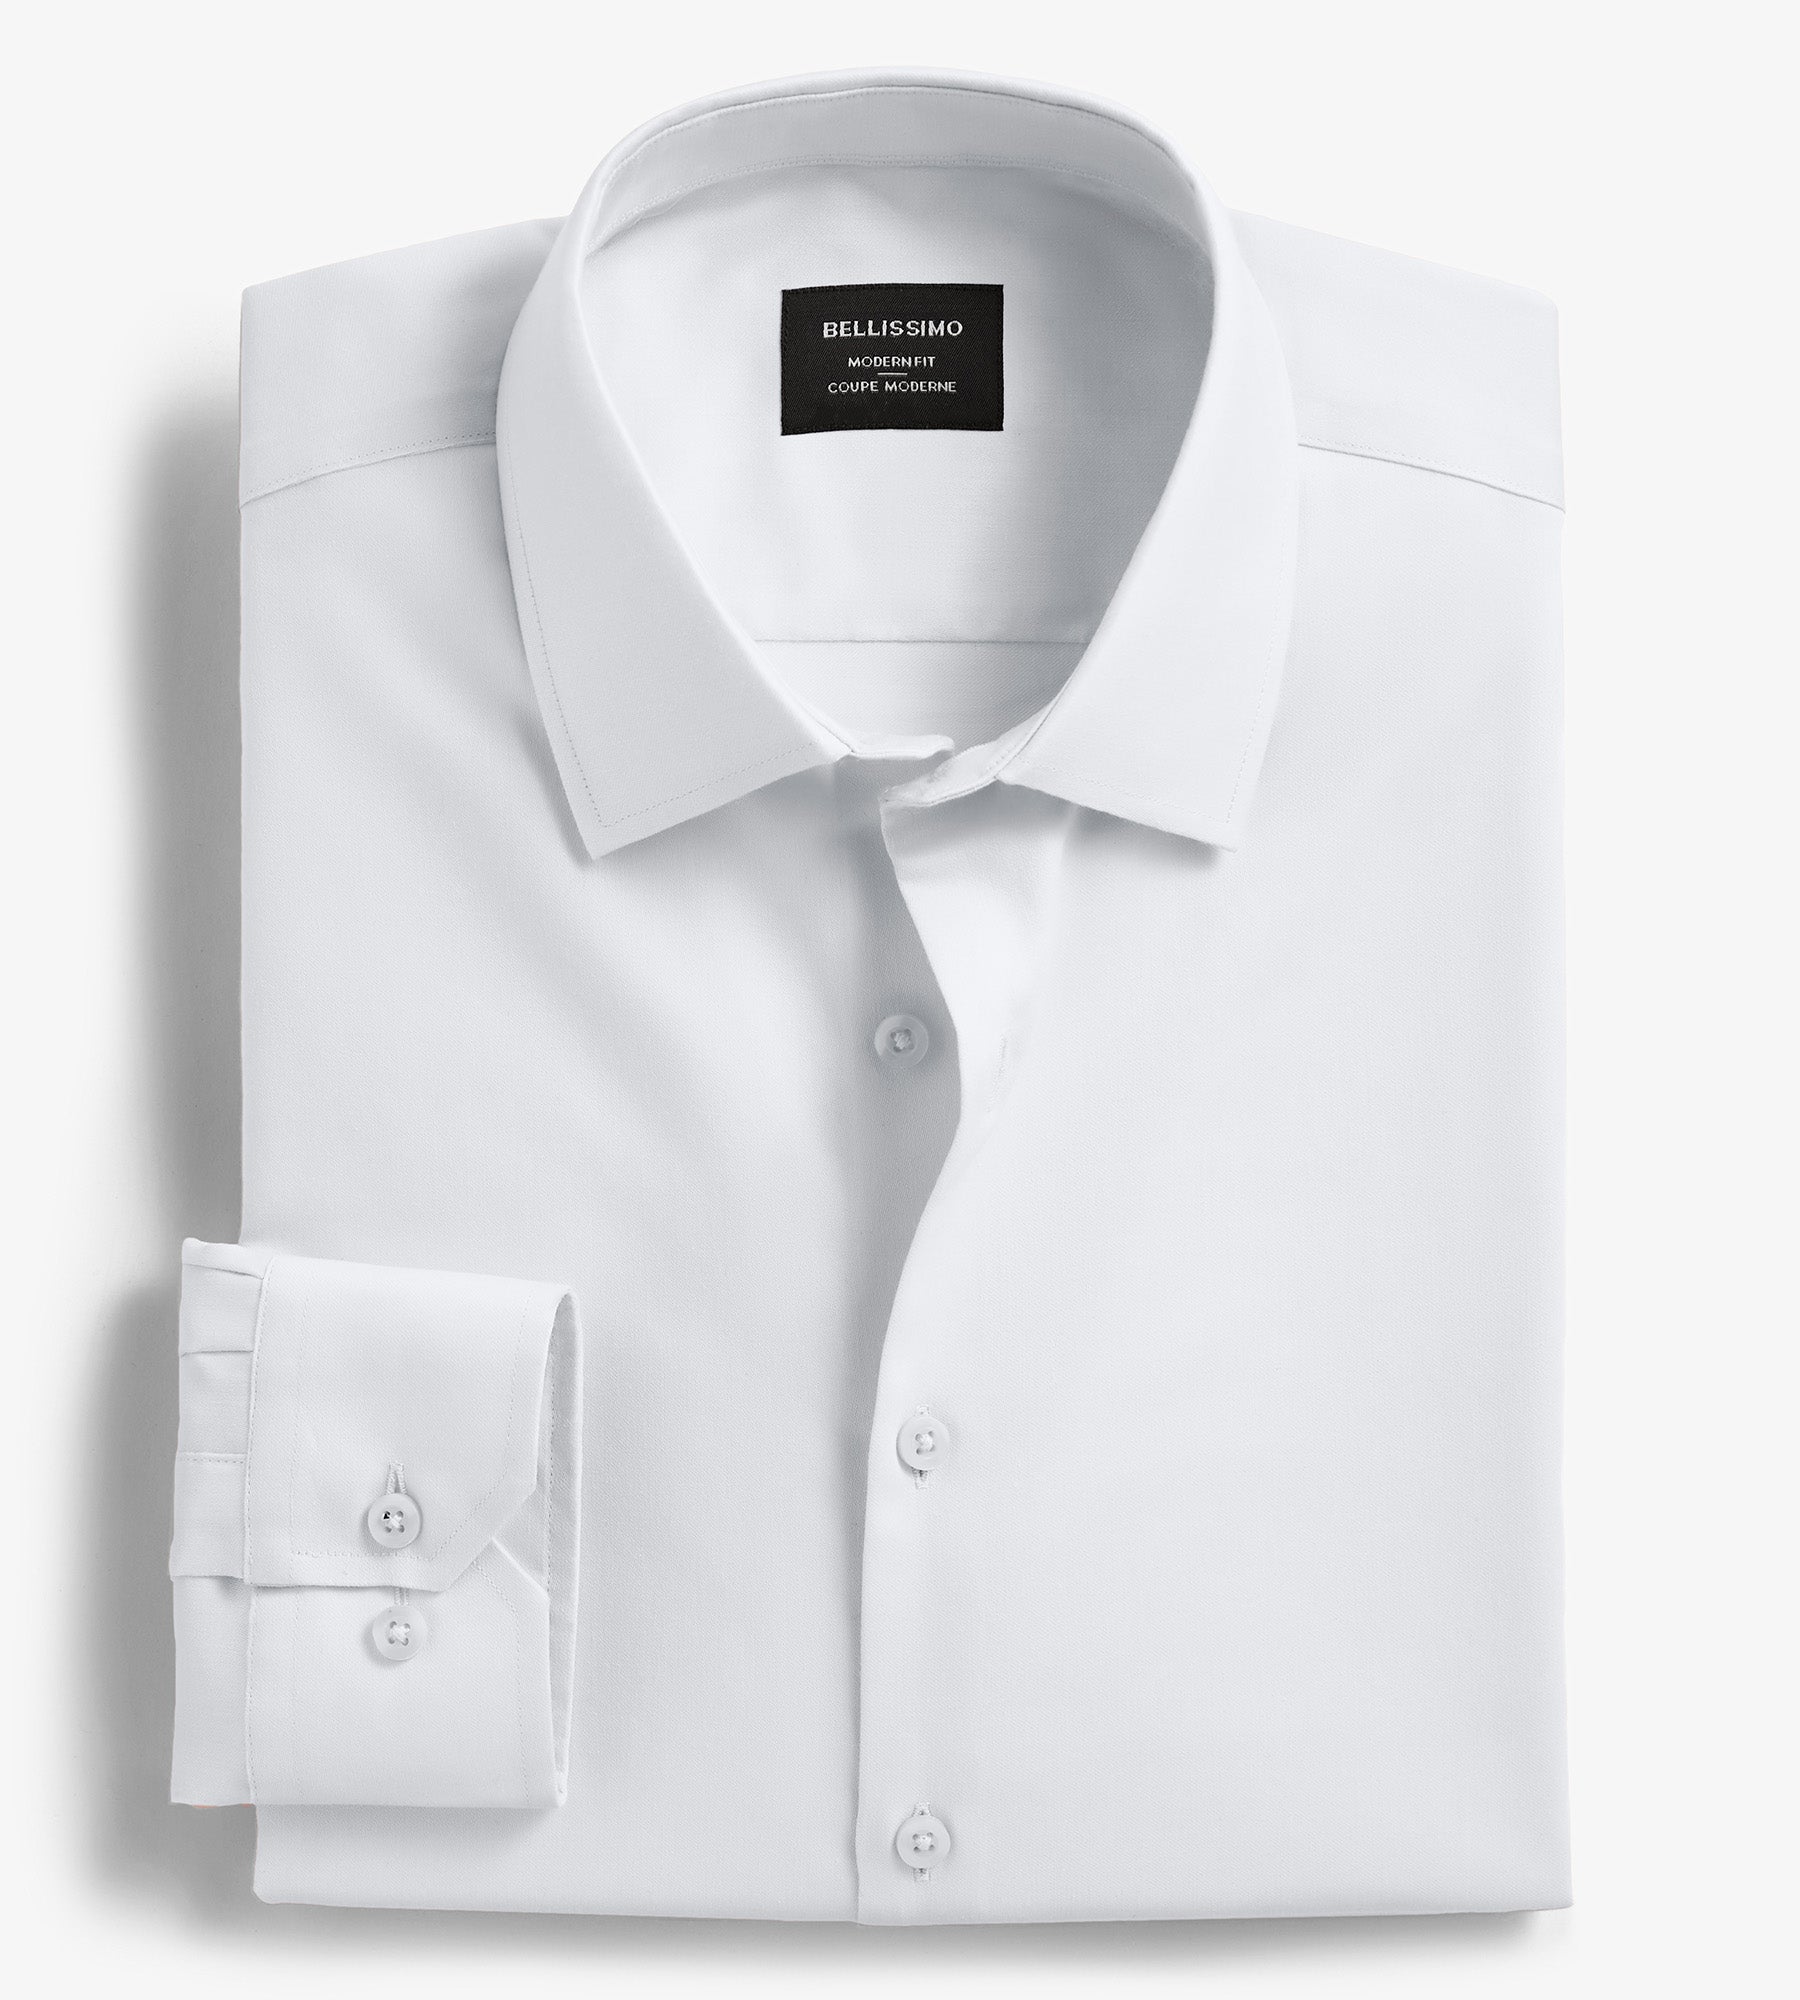 SU-SH-WHT-M: 1/12 white dress shirt for 6 ML Nota MixMax Mezco slim body